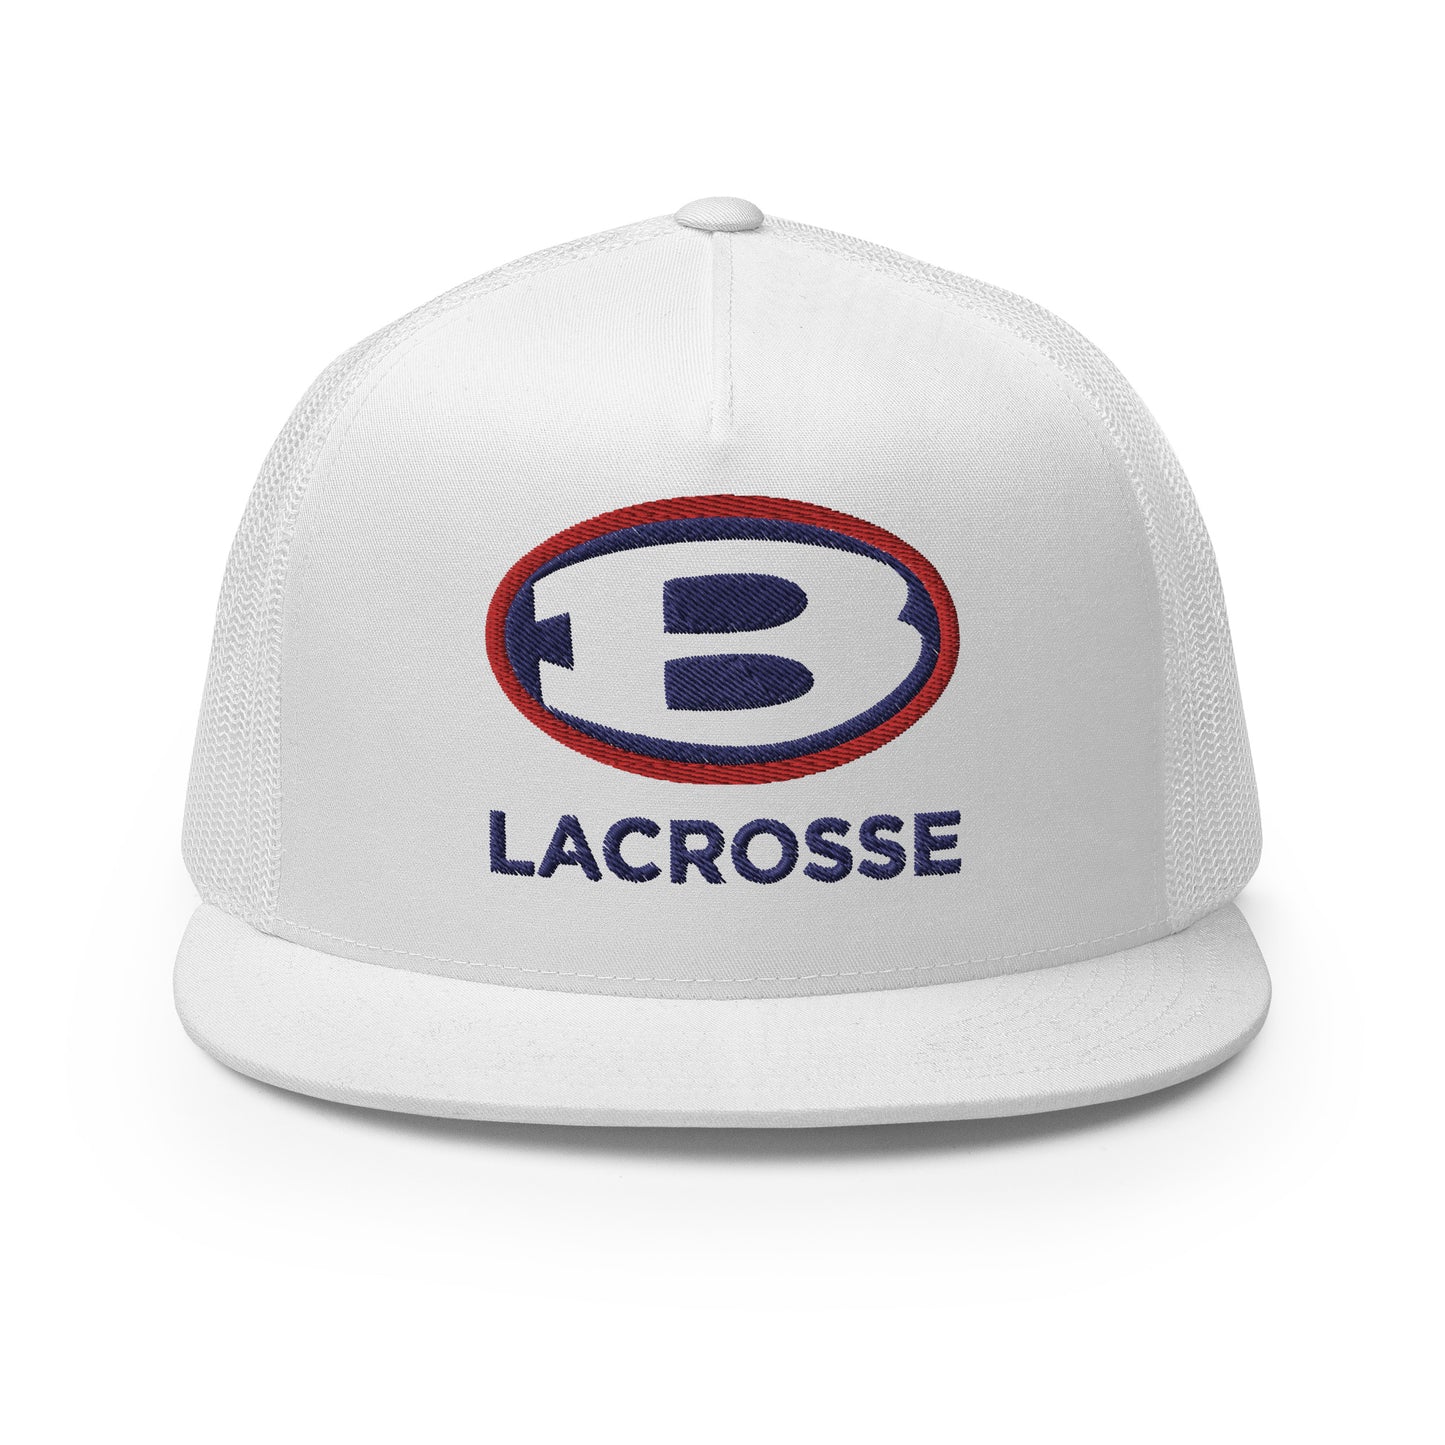 Bellport Lacrosse - Trucker Cap